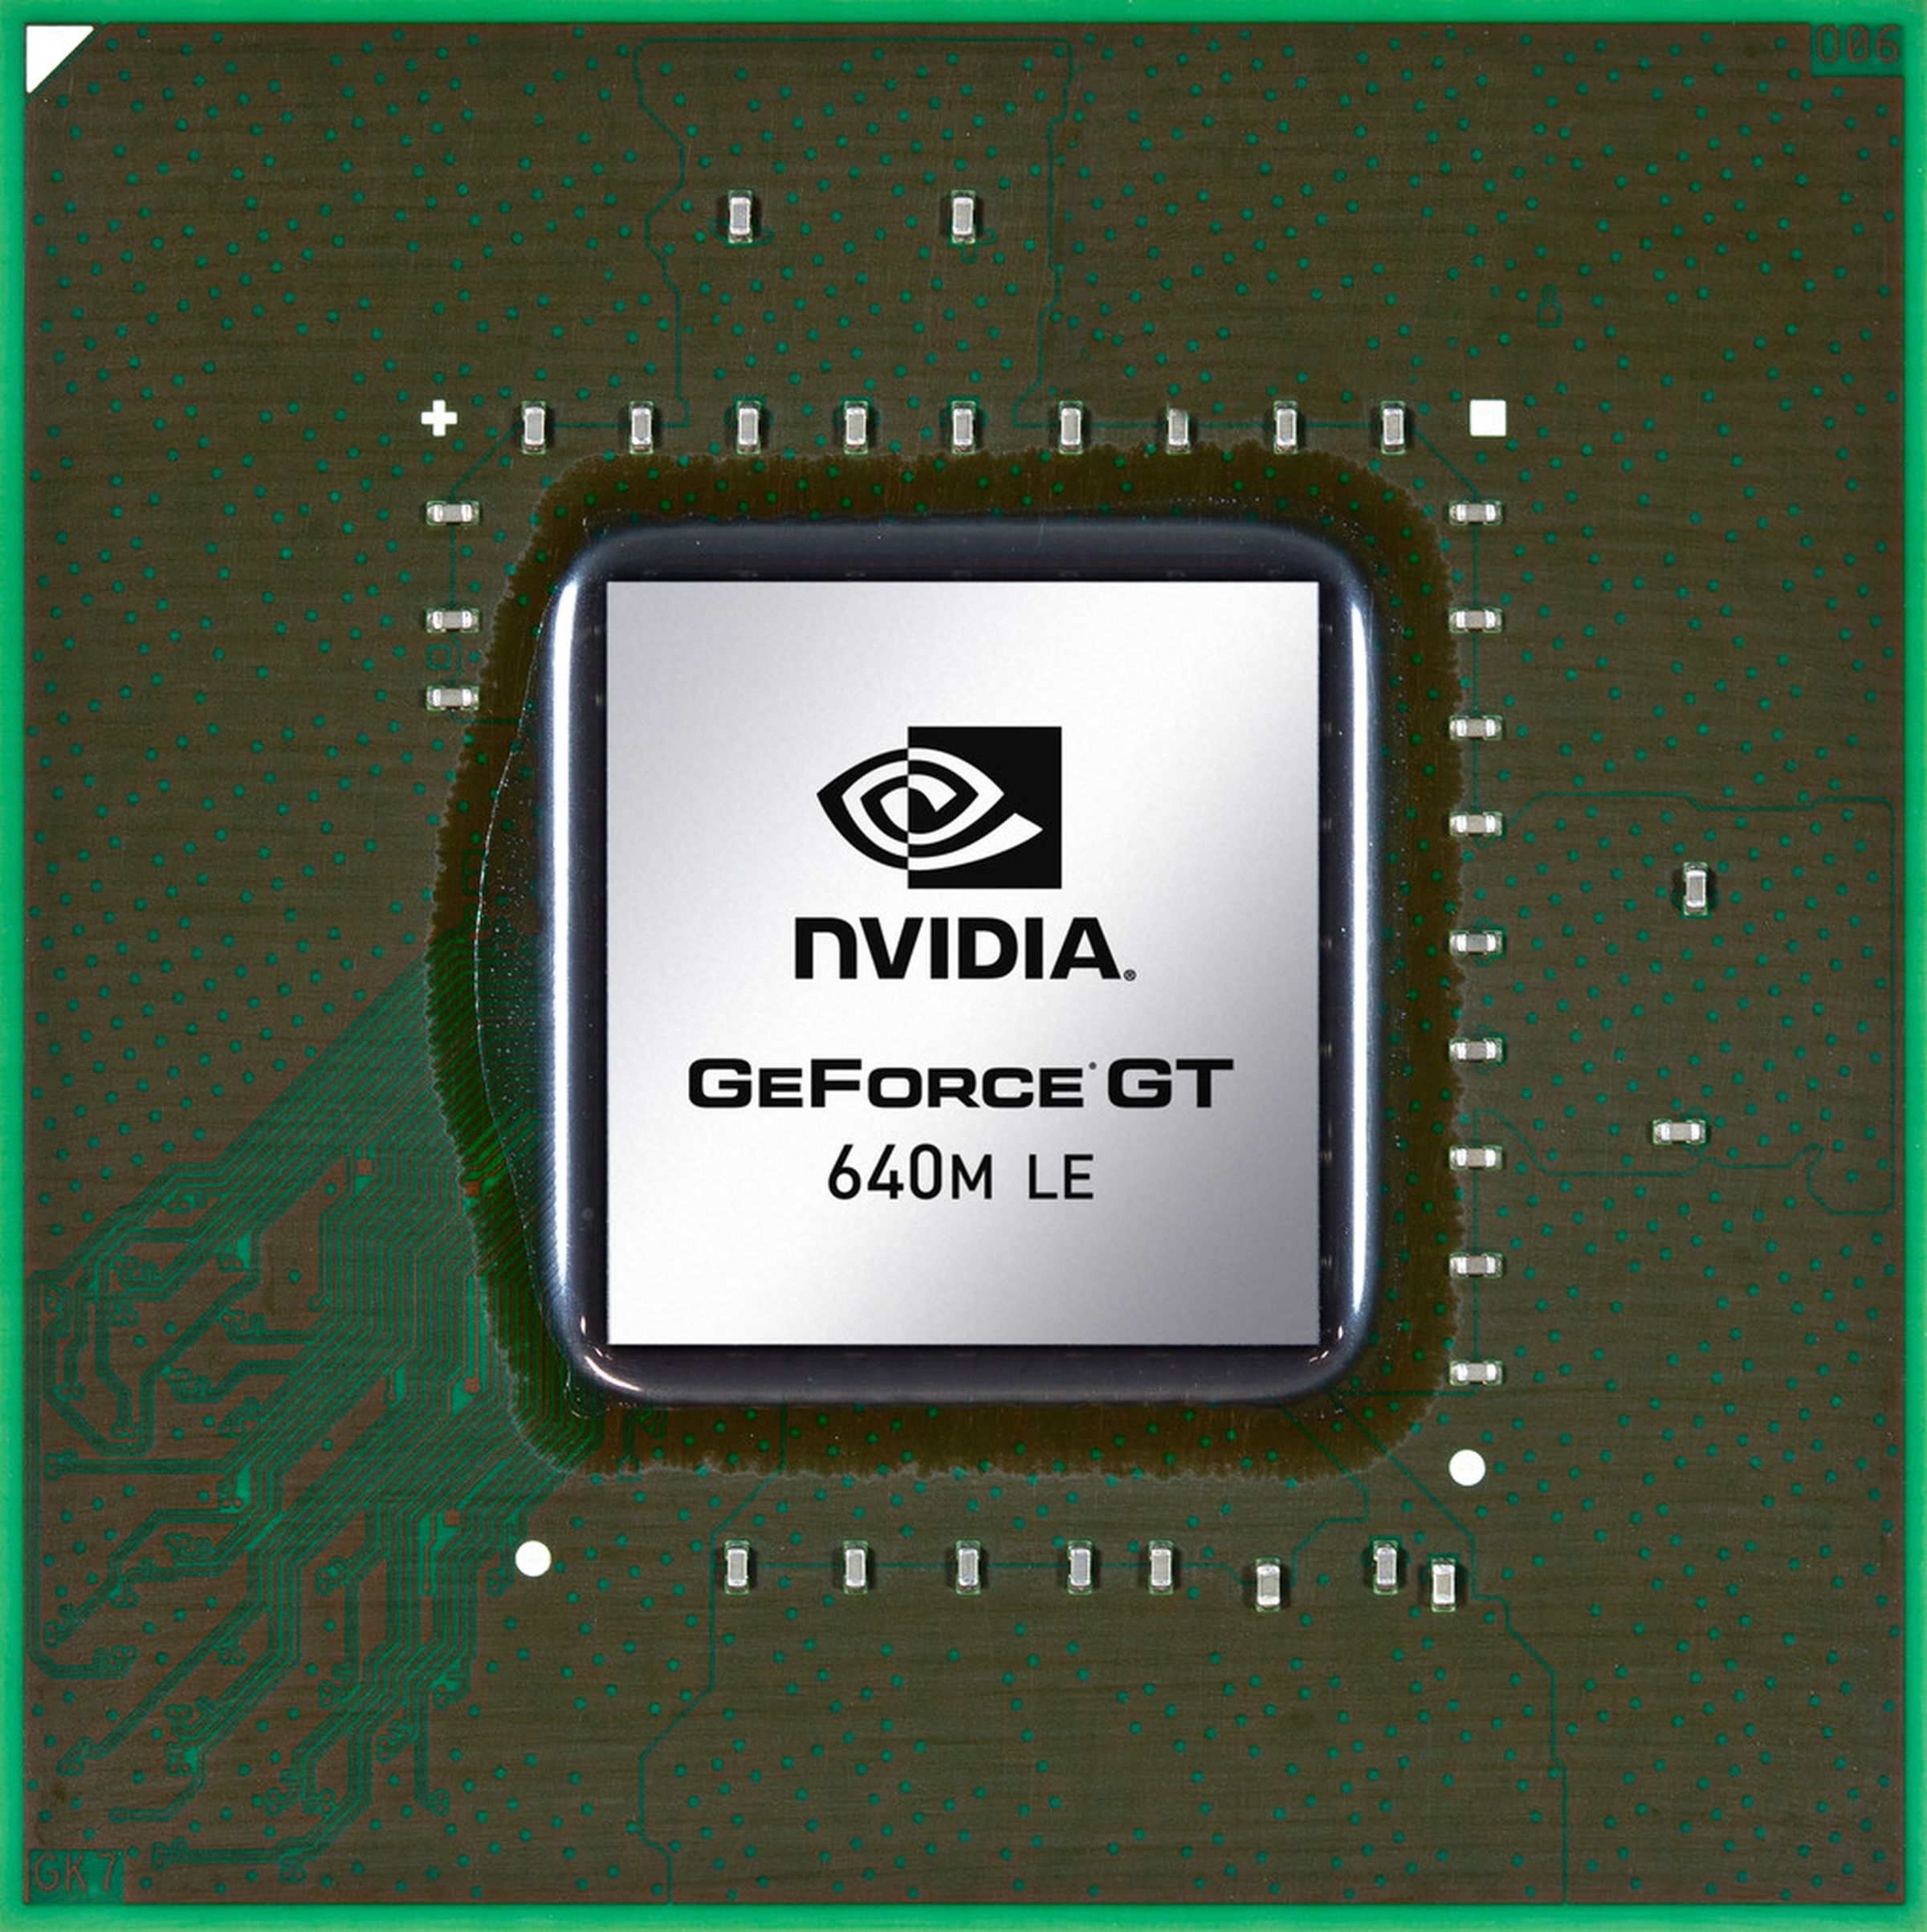 Nvidia GeForce 600M series die pictures